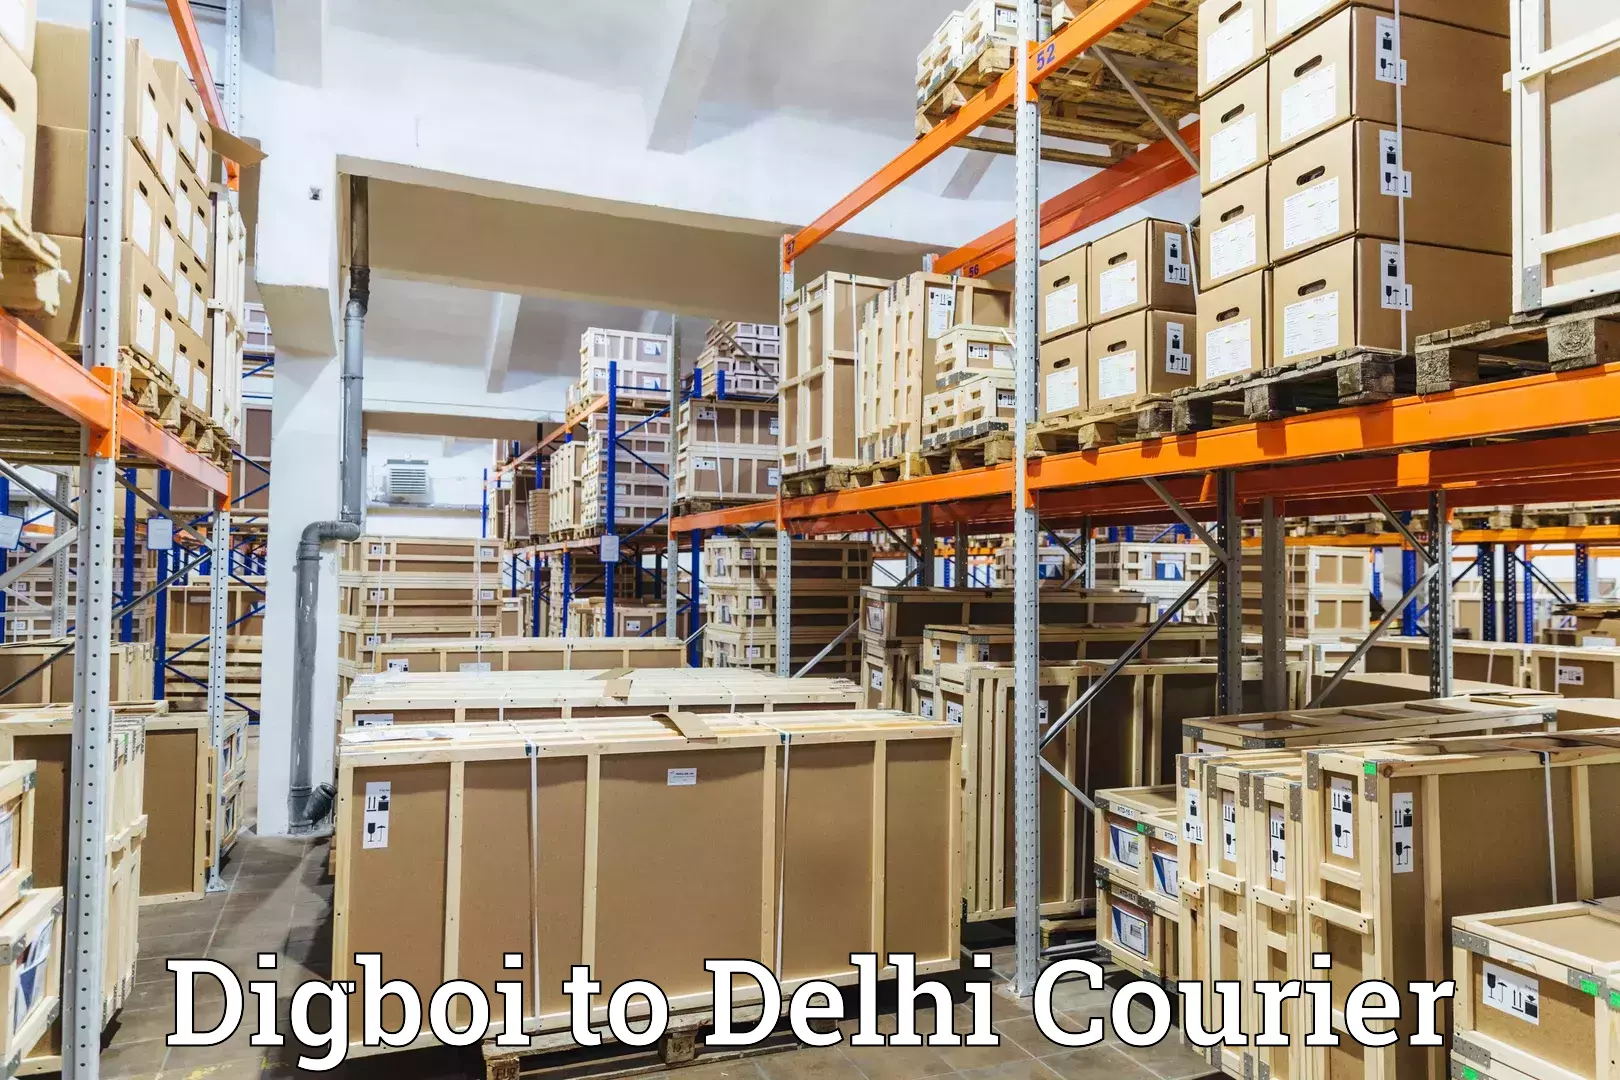 Global shipping networks Digboi to Ashok Vihar